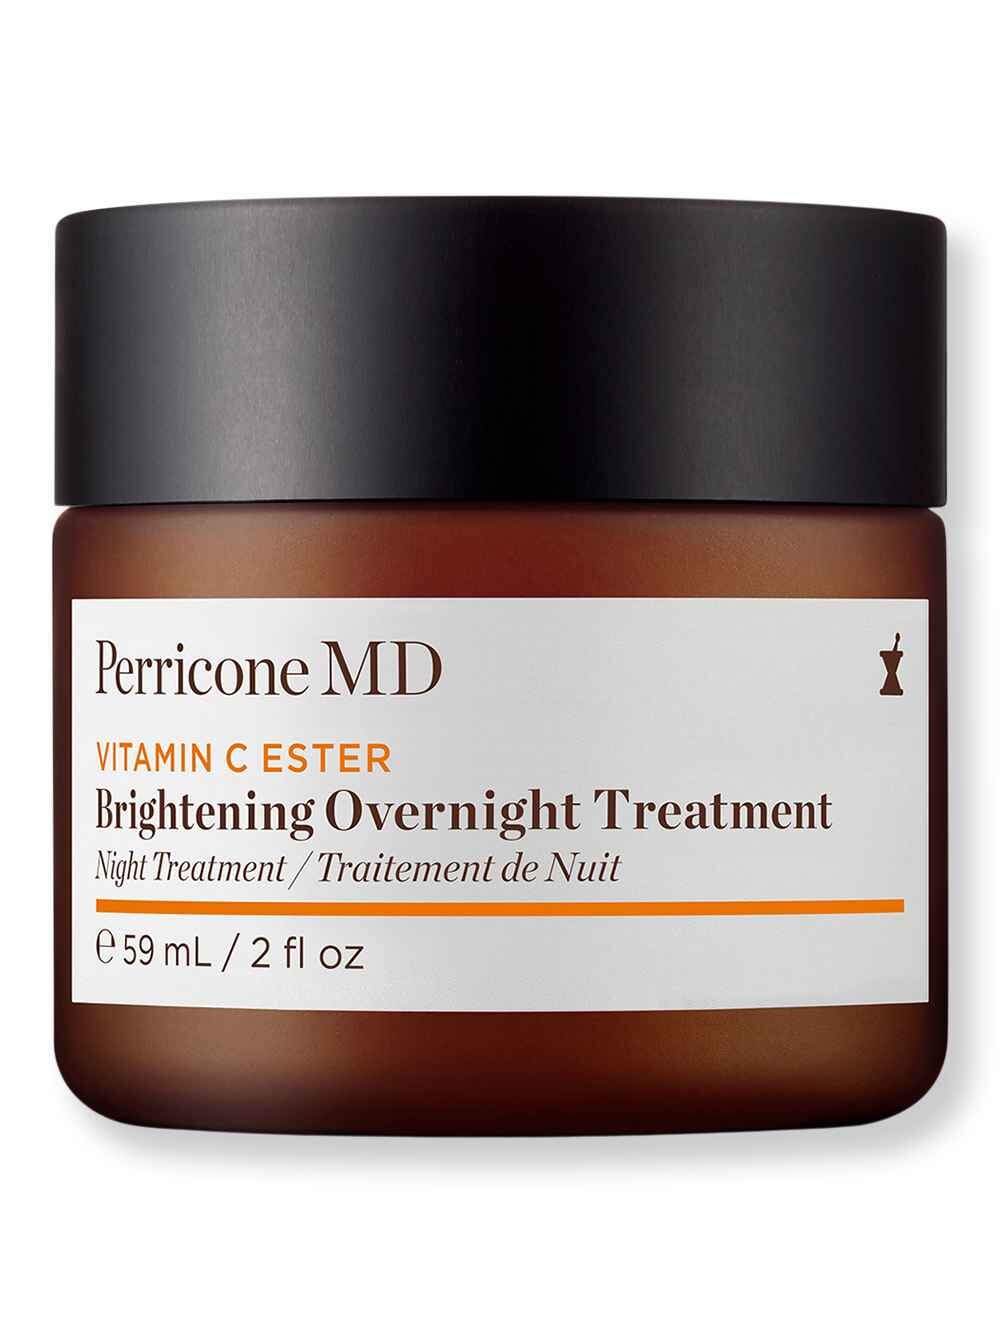 Perricone MD Perricone MD Vitamin C Ester Brightening Overnight Treatment 2 oz59 ml Night Creams 